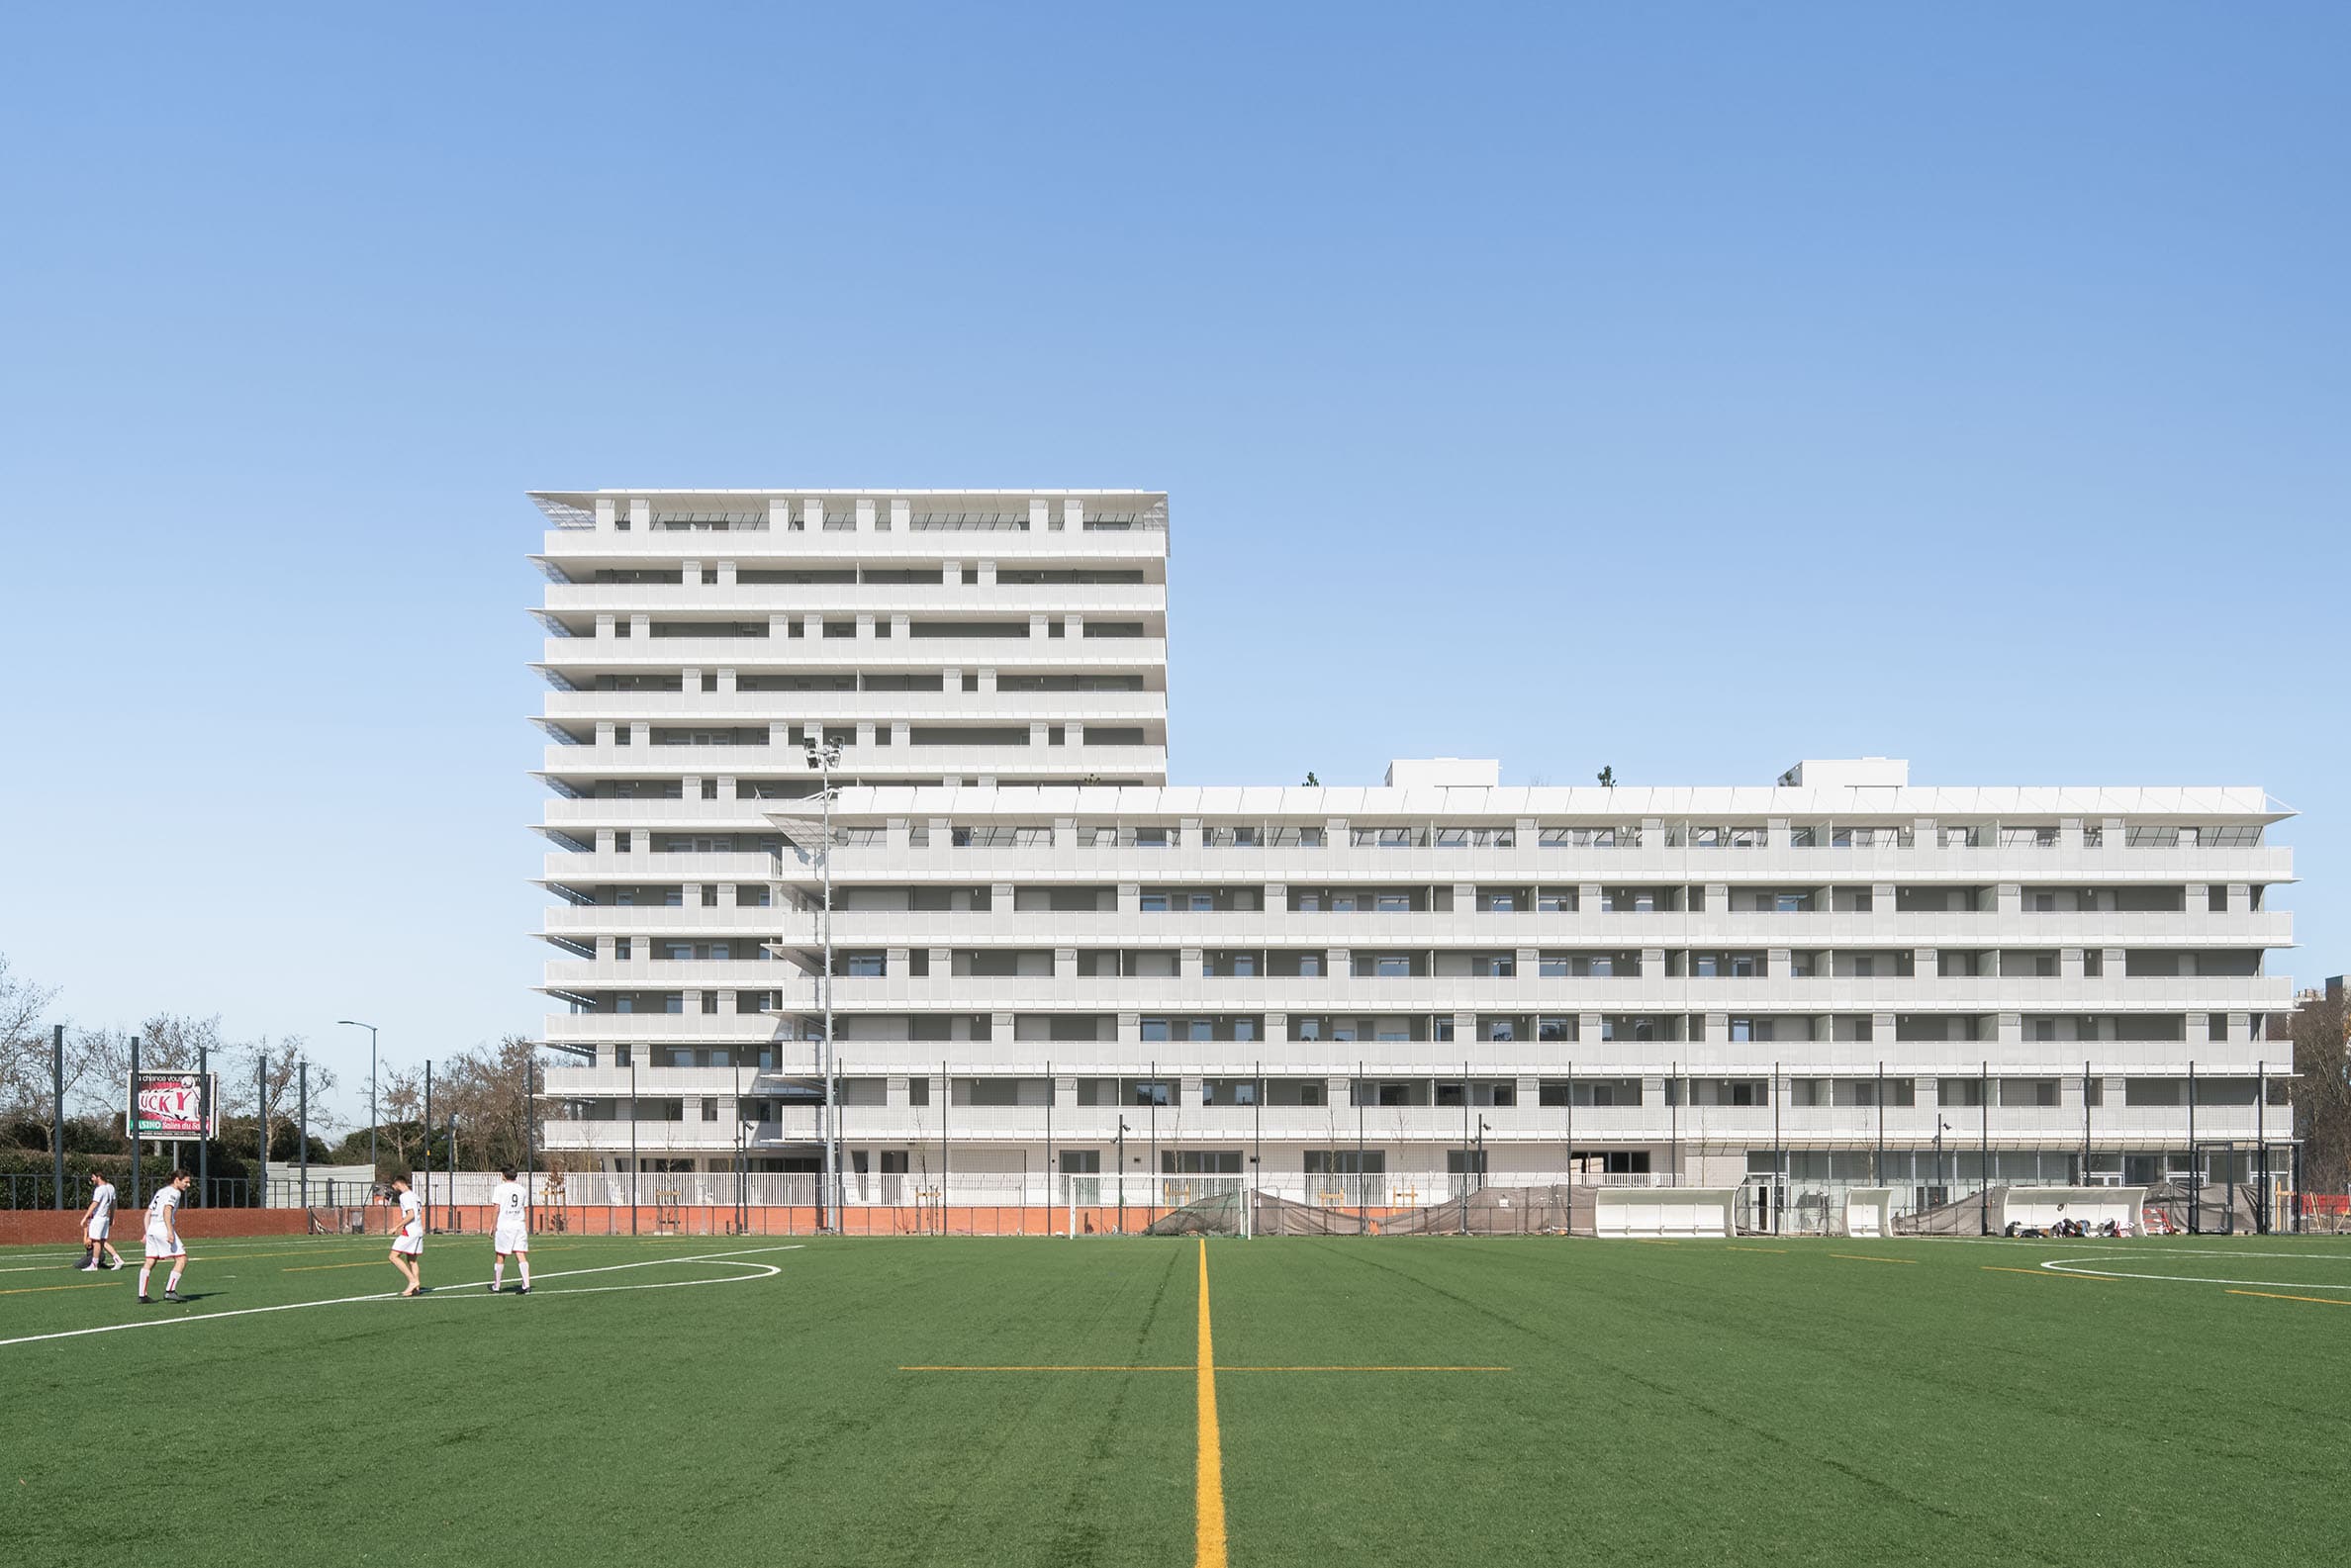 Blick auf zwei mehrstöckige, blockartige Wohngebäude, das hintere höher, davor ein Fußballplatz. CoBe, Belvedere und Präriegebäude, Toulouse, Foto: Cédric Colin